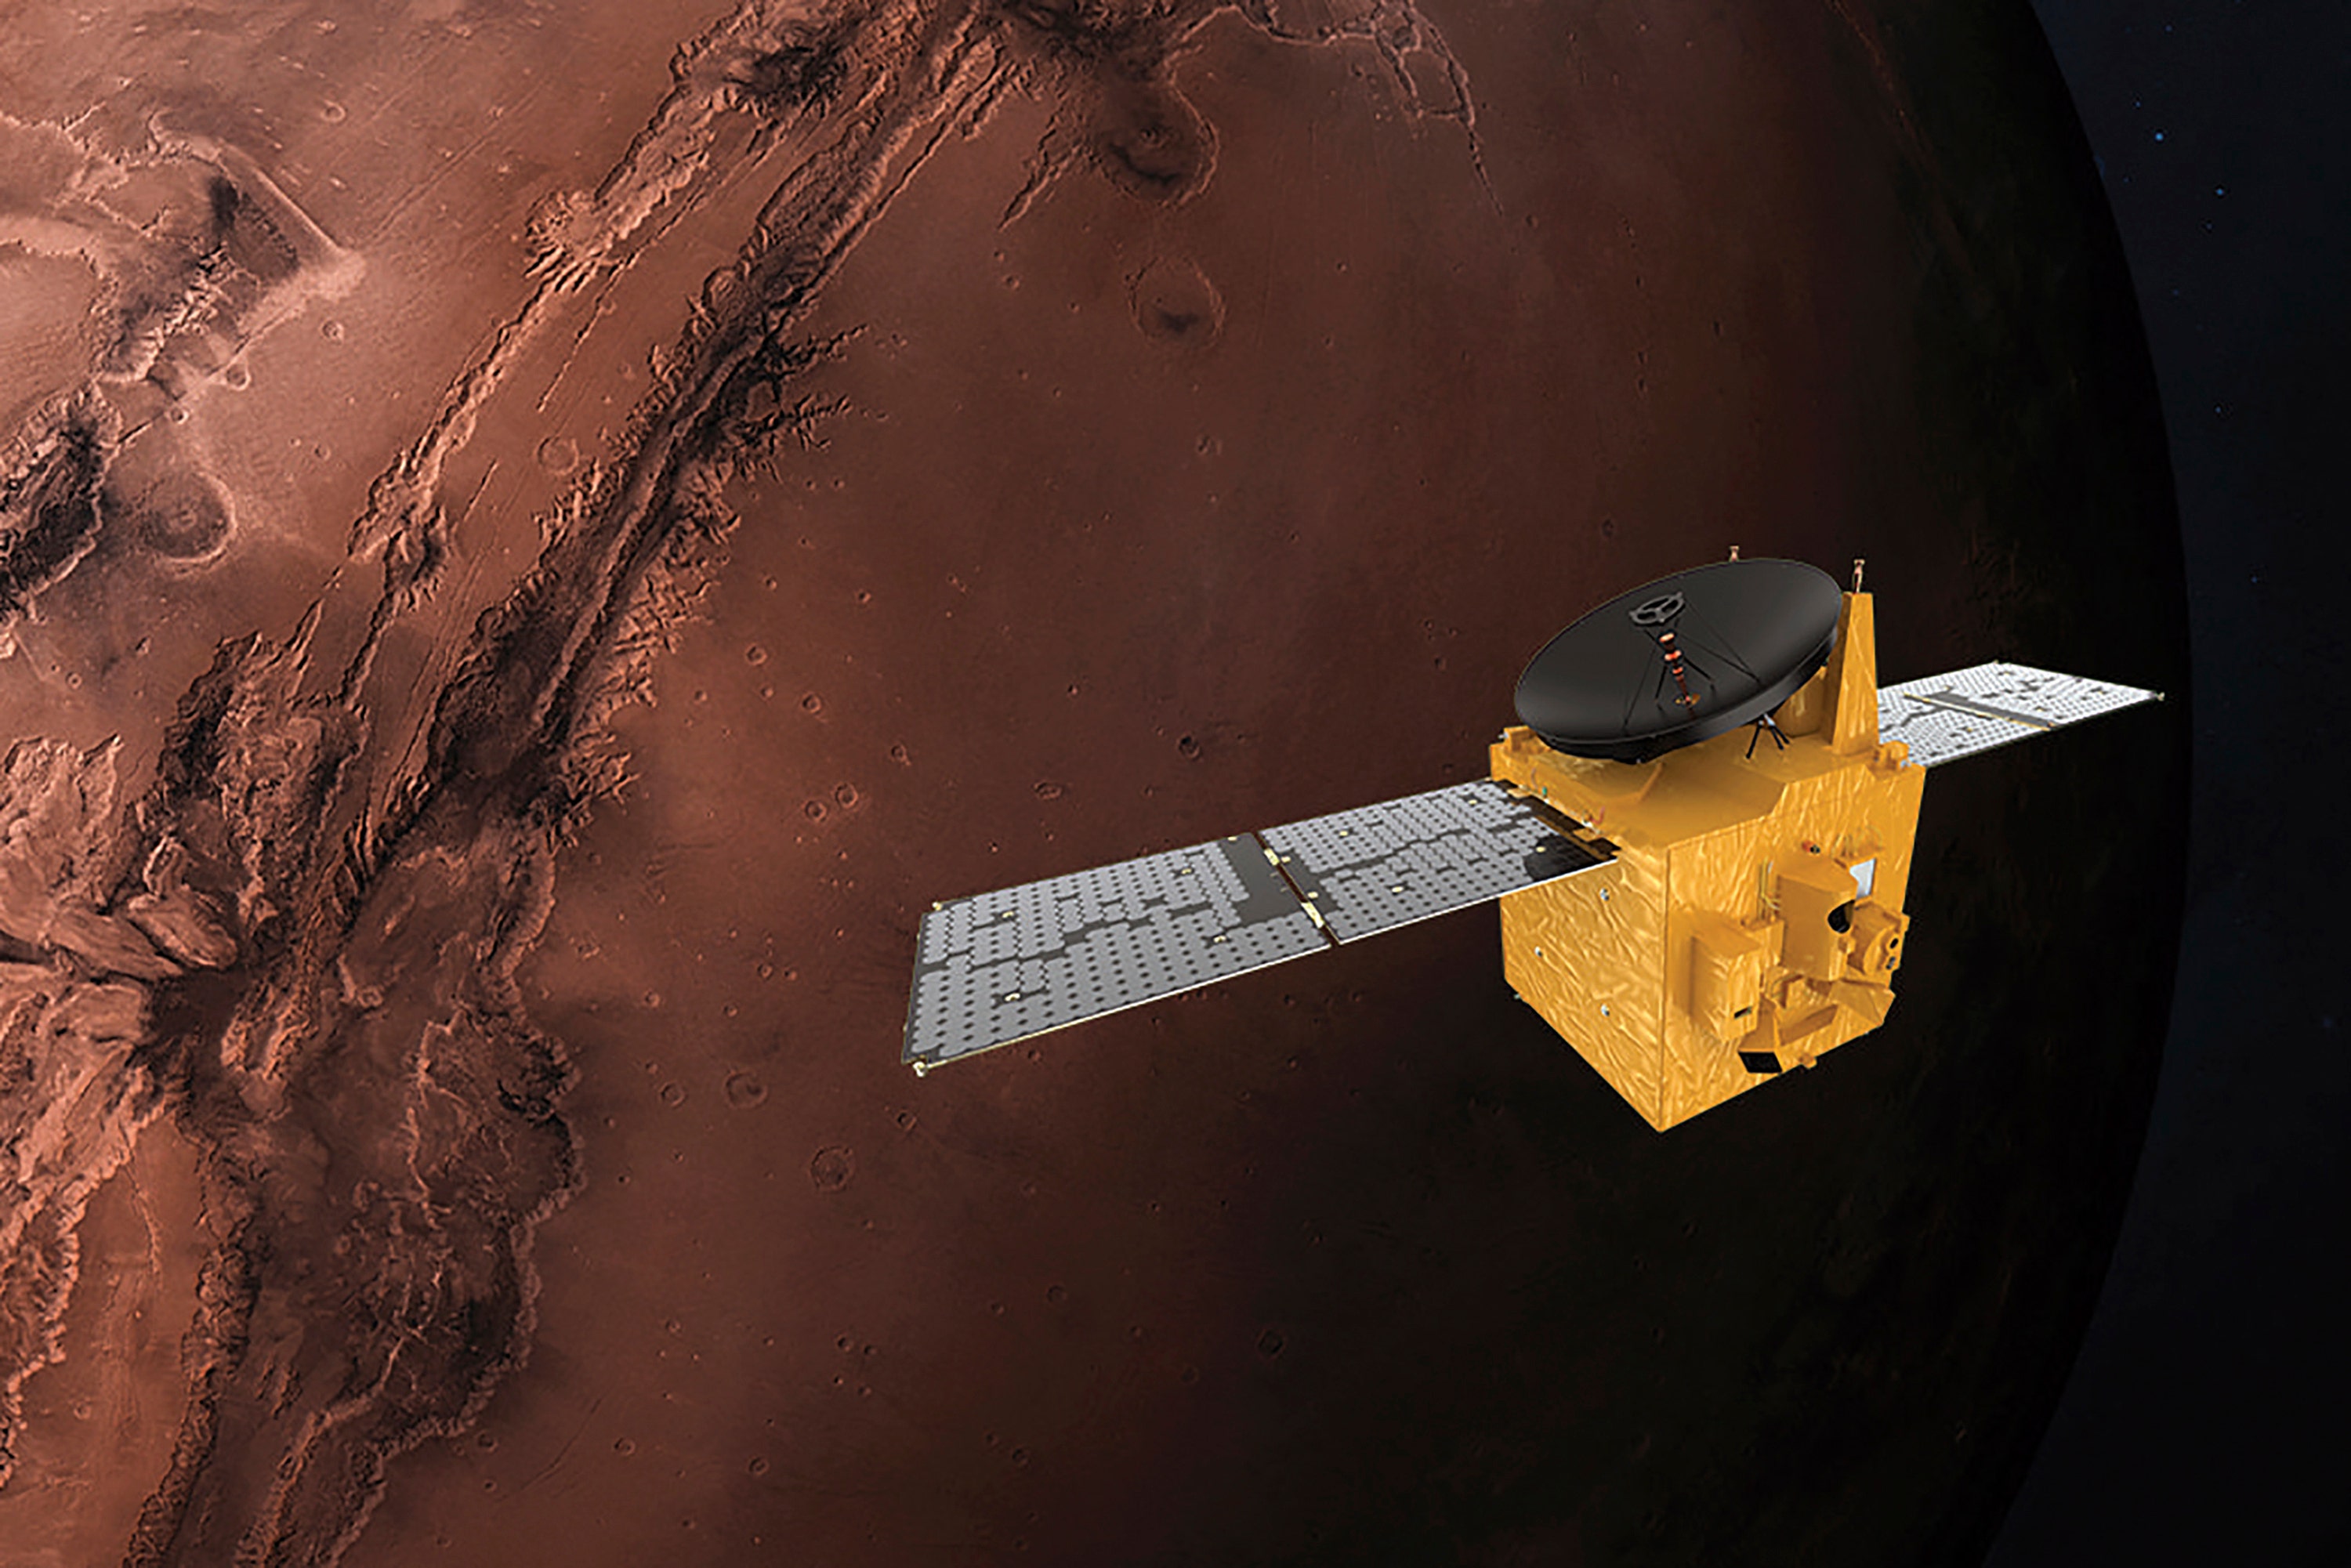 Марсианский зонд. Зонд на Марсе 2021. Марс Орбитер снимок Марса. Марс-экспресс автоматическая межпланетная станция.